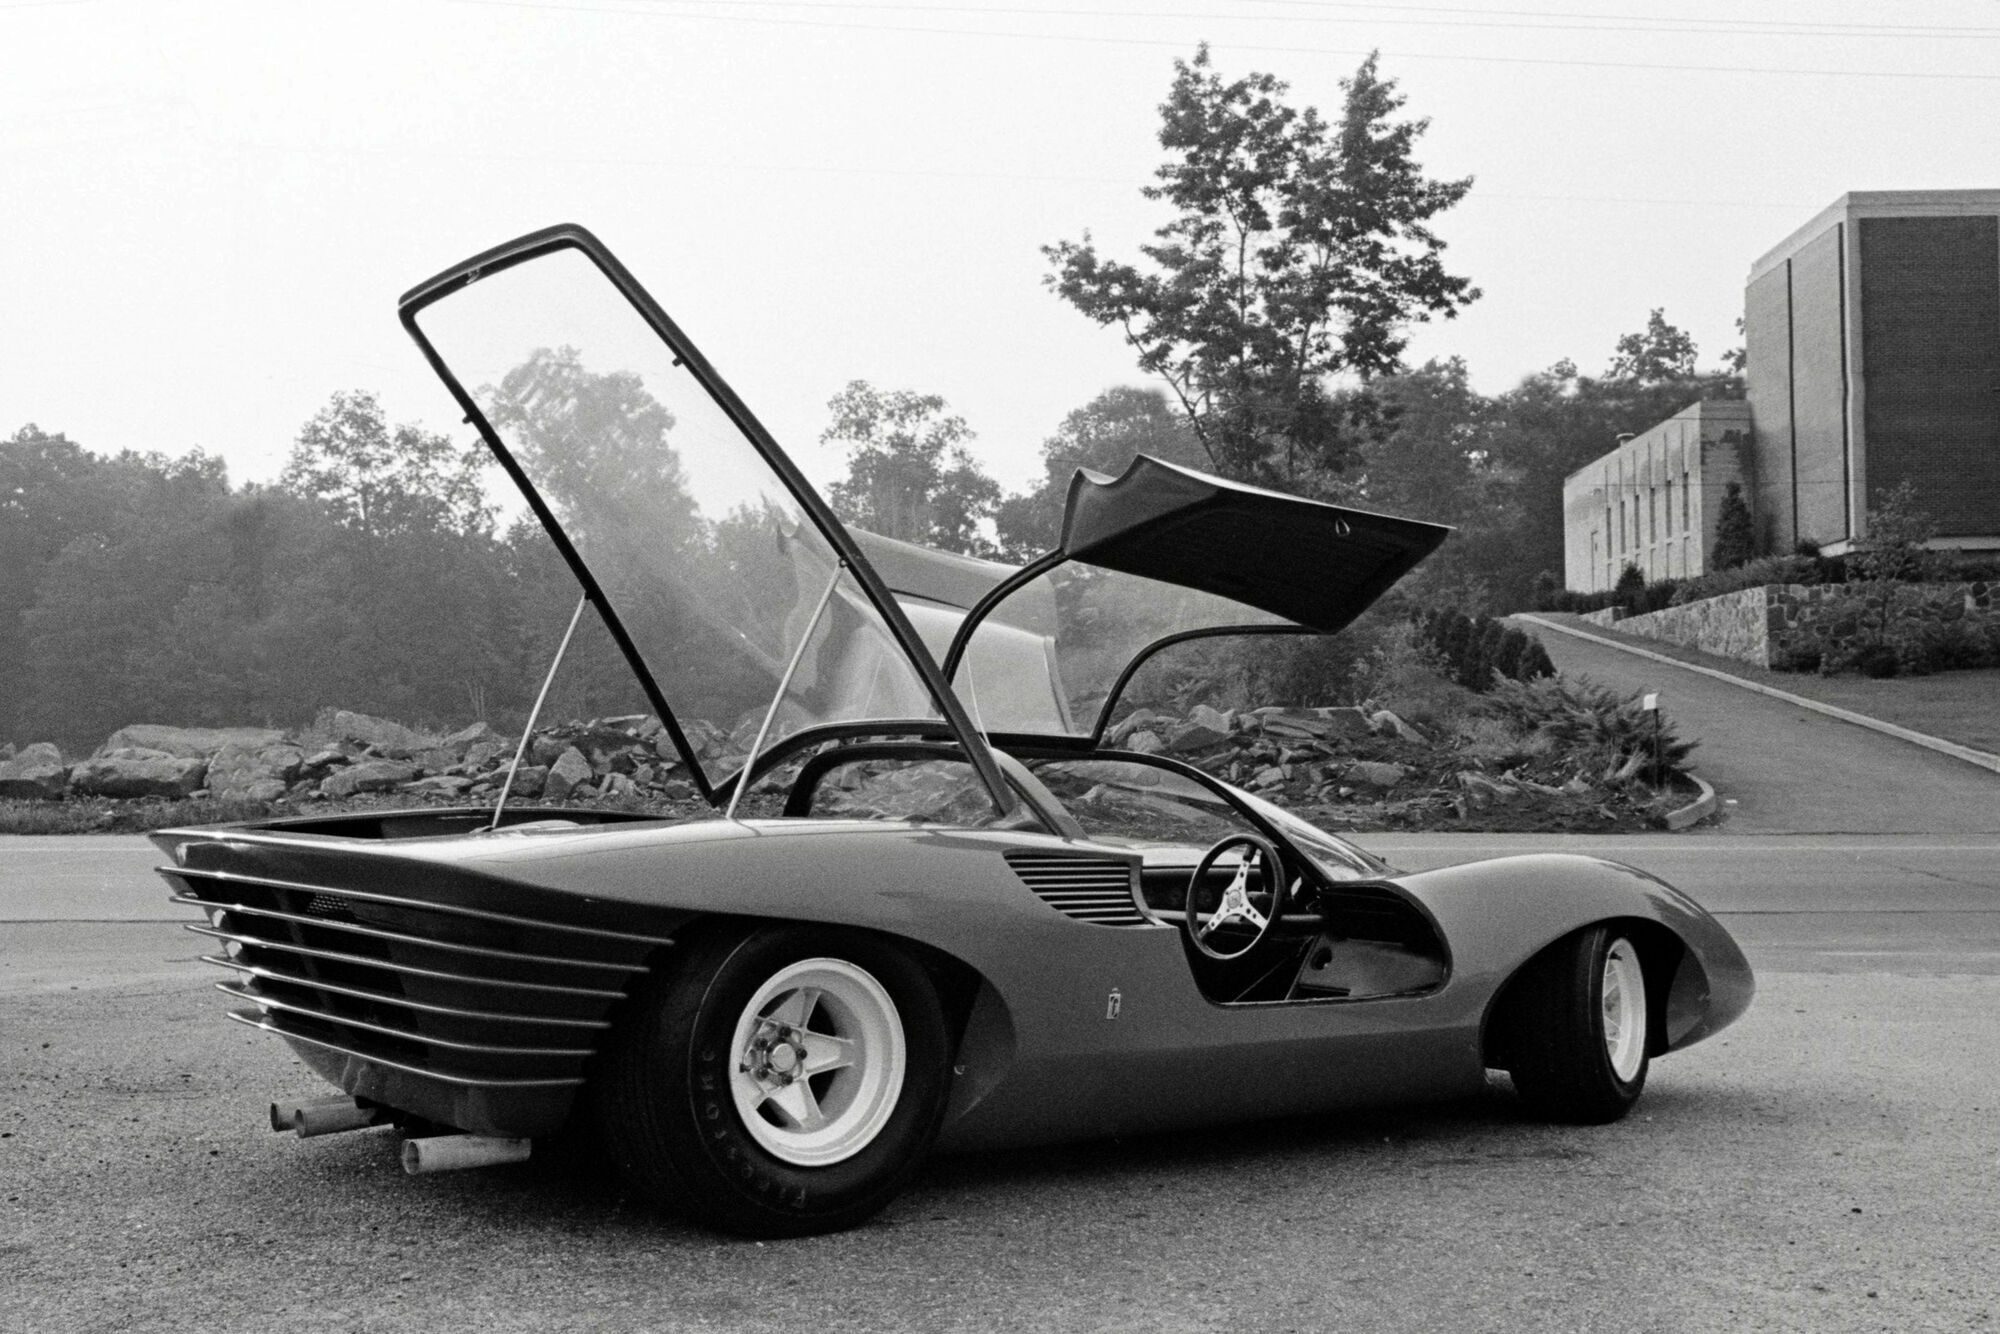 В облике новинки чувствуется влияние прототипа Ferrari 250 P5 Berlinetta Speciale, созданного в ателье Pininfarina в 1968 году